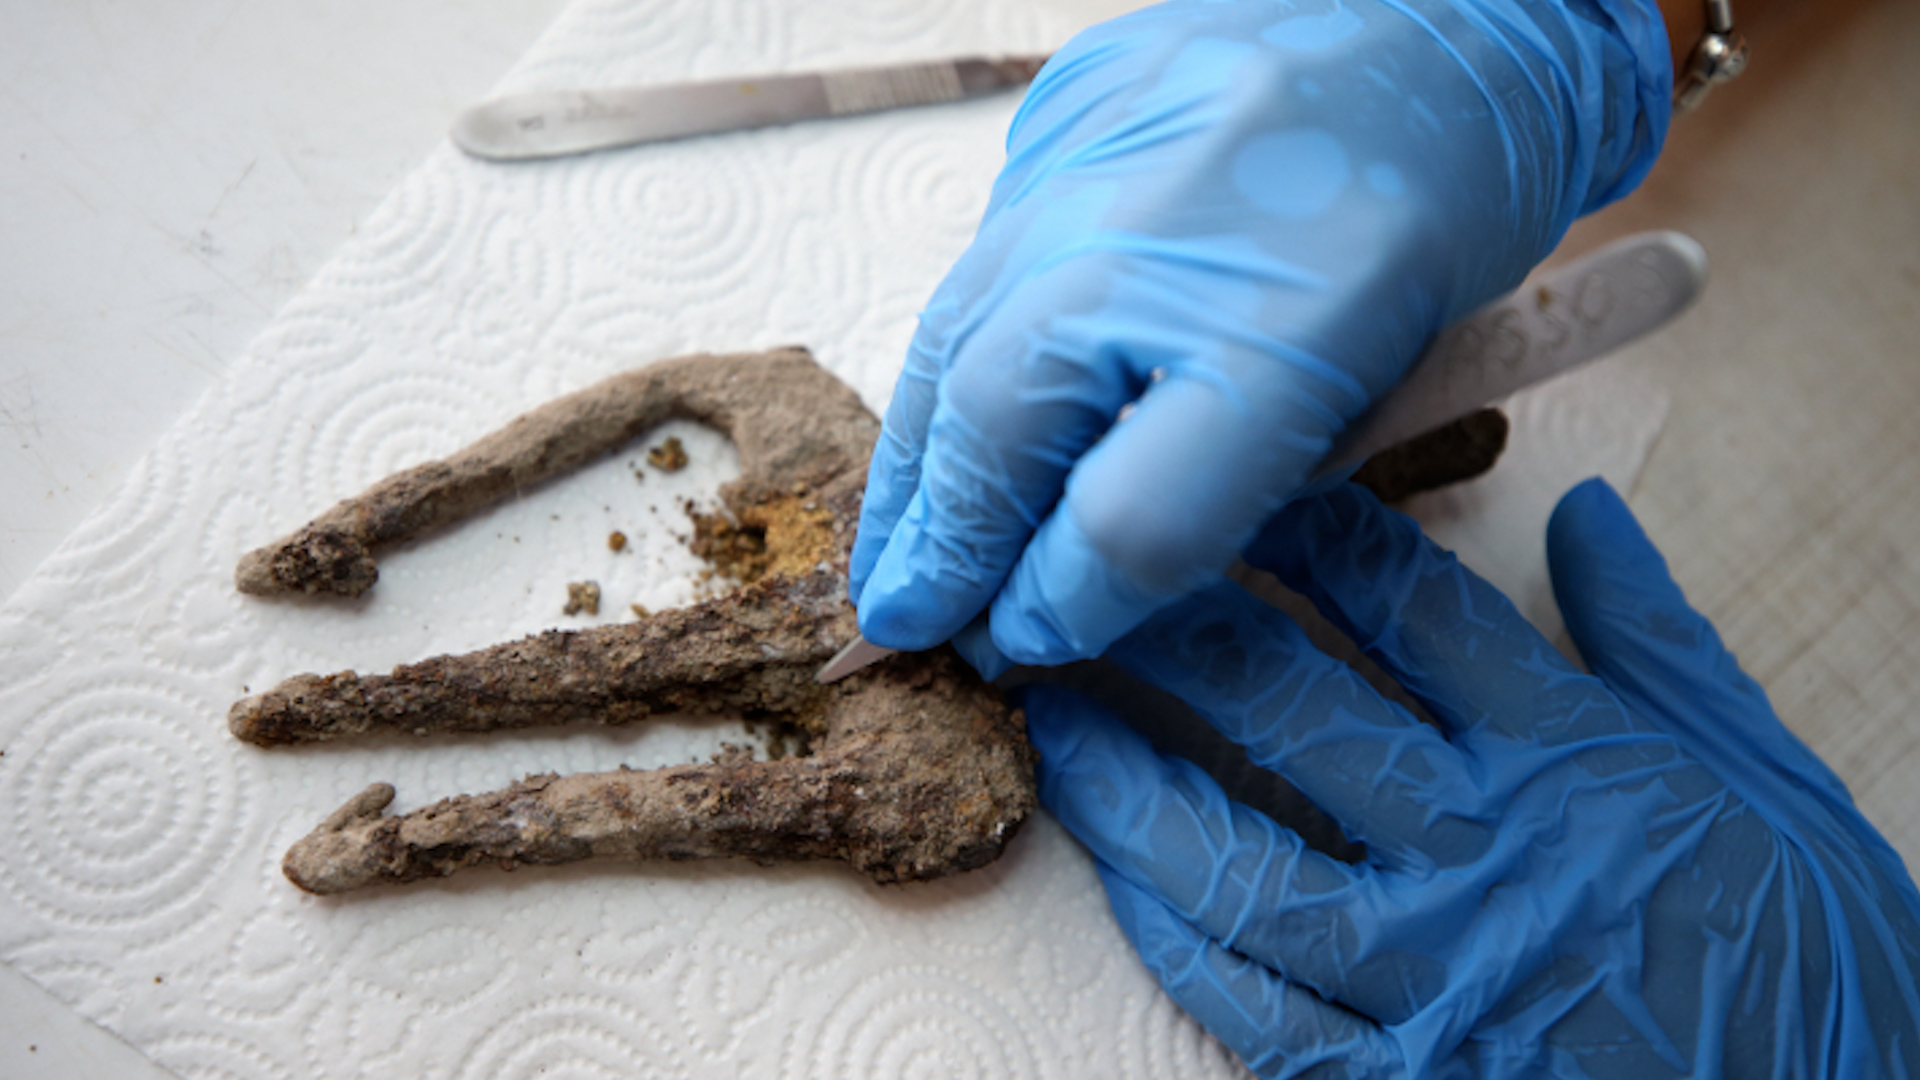 ตุรกีขุดพบฉมวก 'ตรีศูล' โบราณ คาดอายุ 1,800 ปี